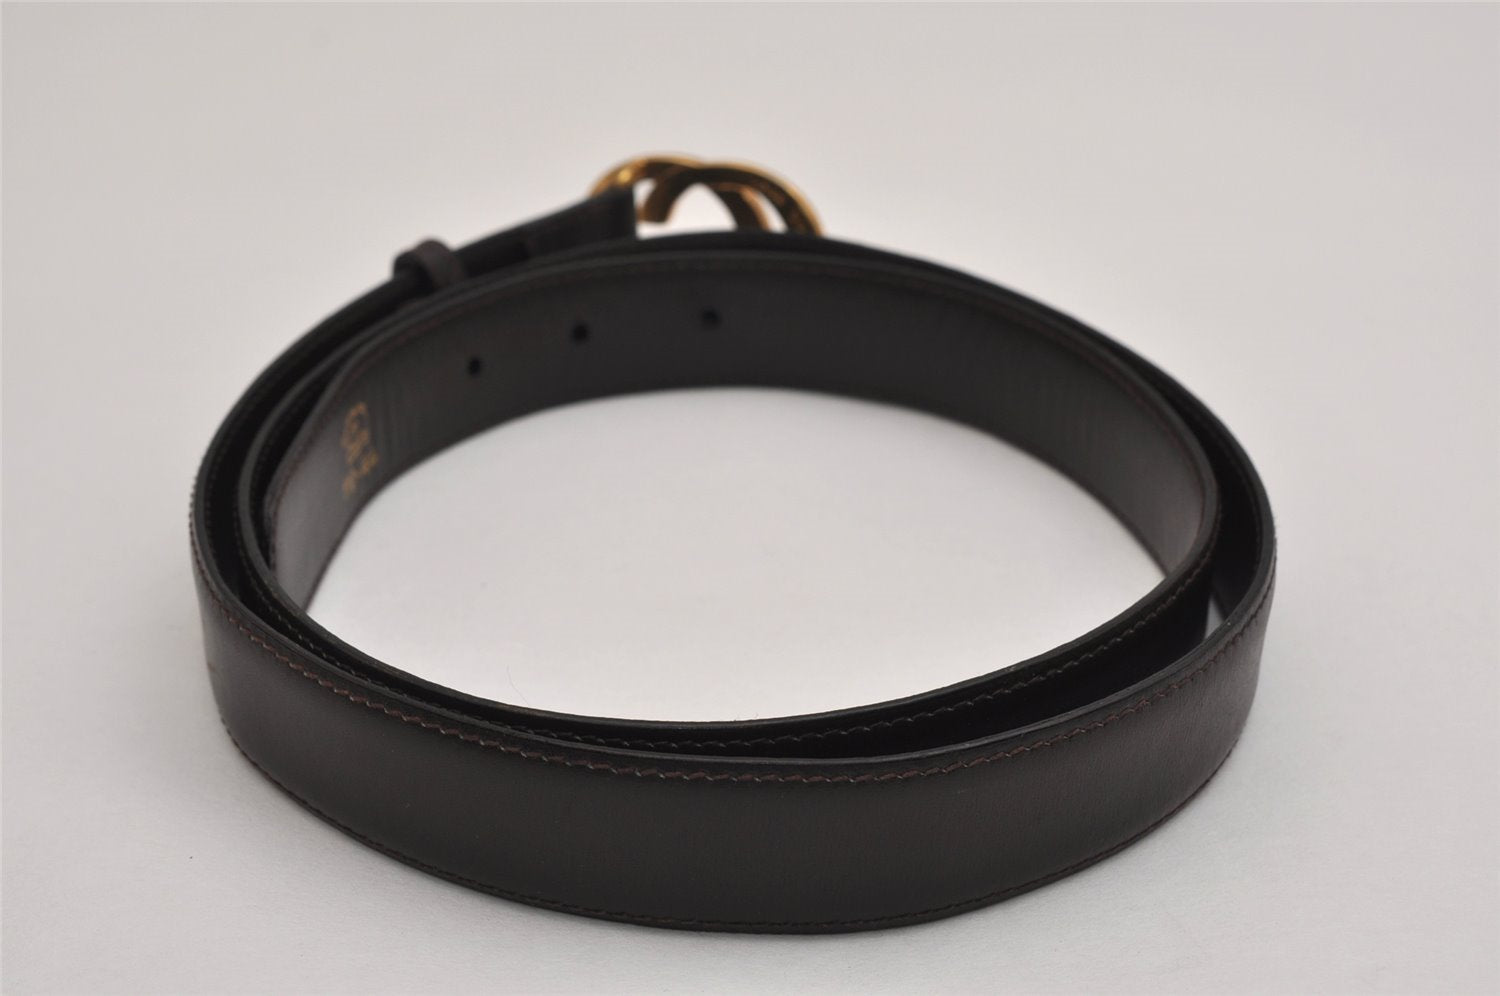 Authentic GUCCI Vintage Belt Leather Size 110cm 43.3